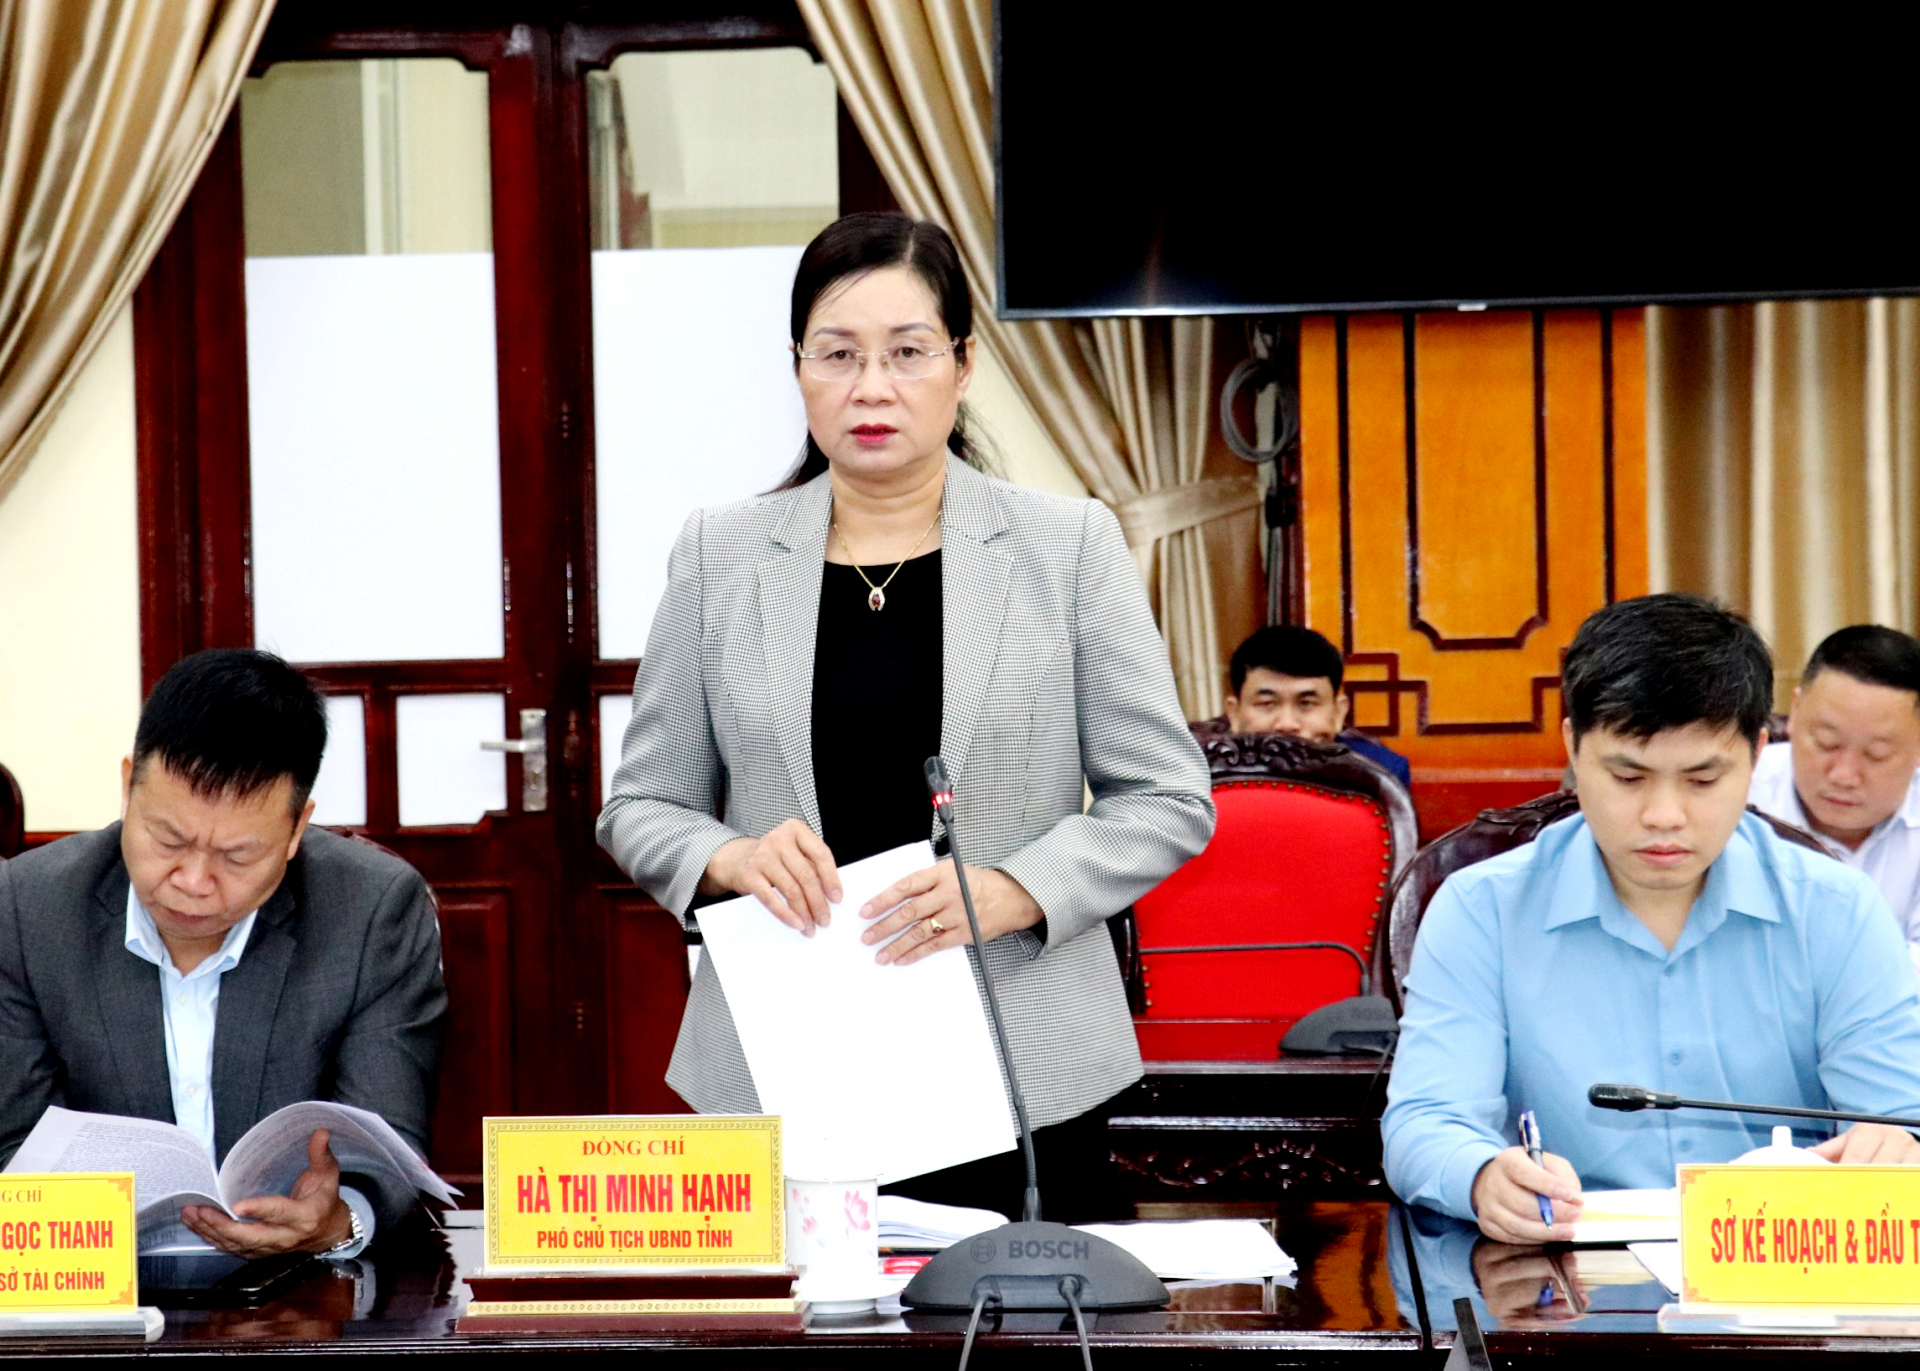 Phó Chủ tịch UBND tỉnh Hà Thị Minh Hạnh trao đổi tại buổi làm việc.
